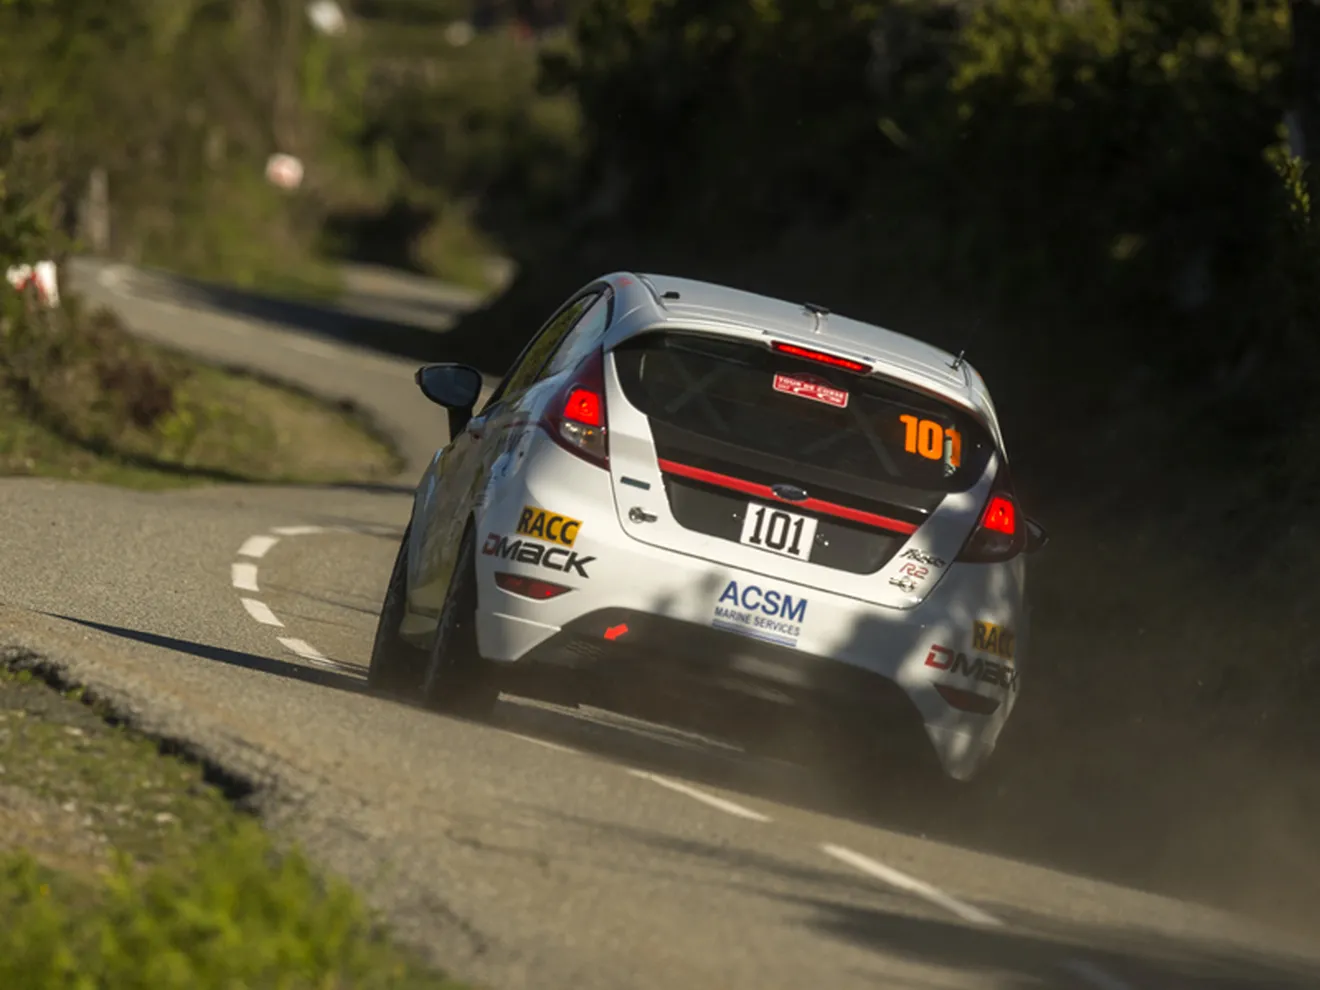 Nil Solans también disputará el Rally de Portugal